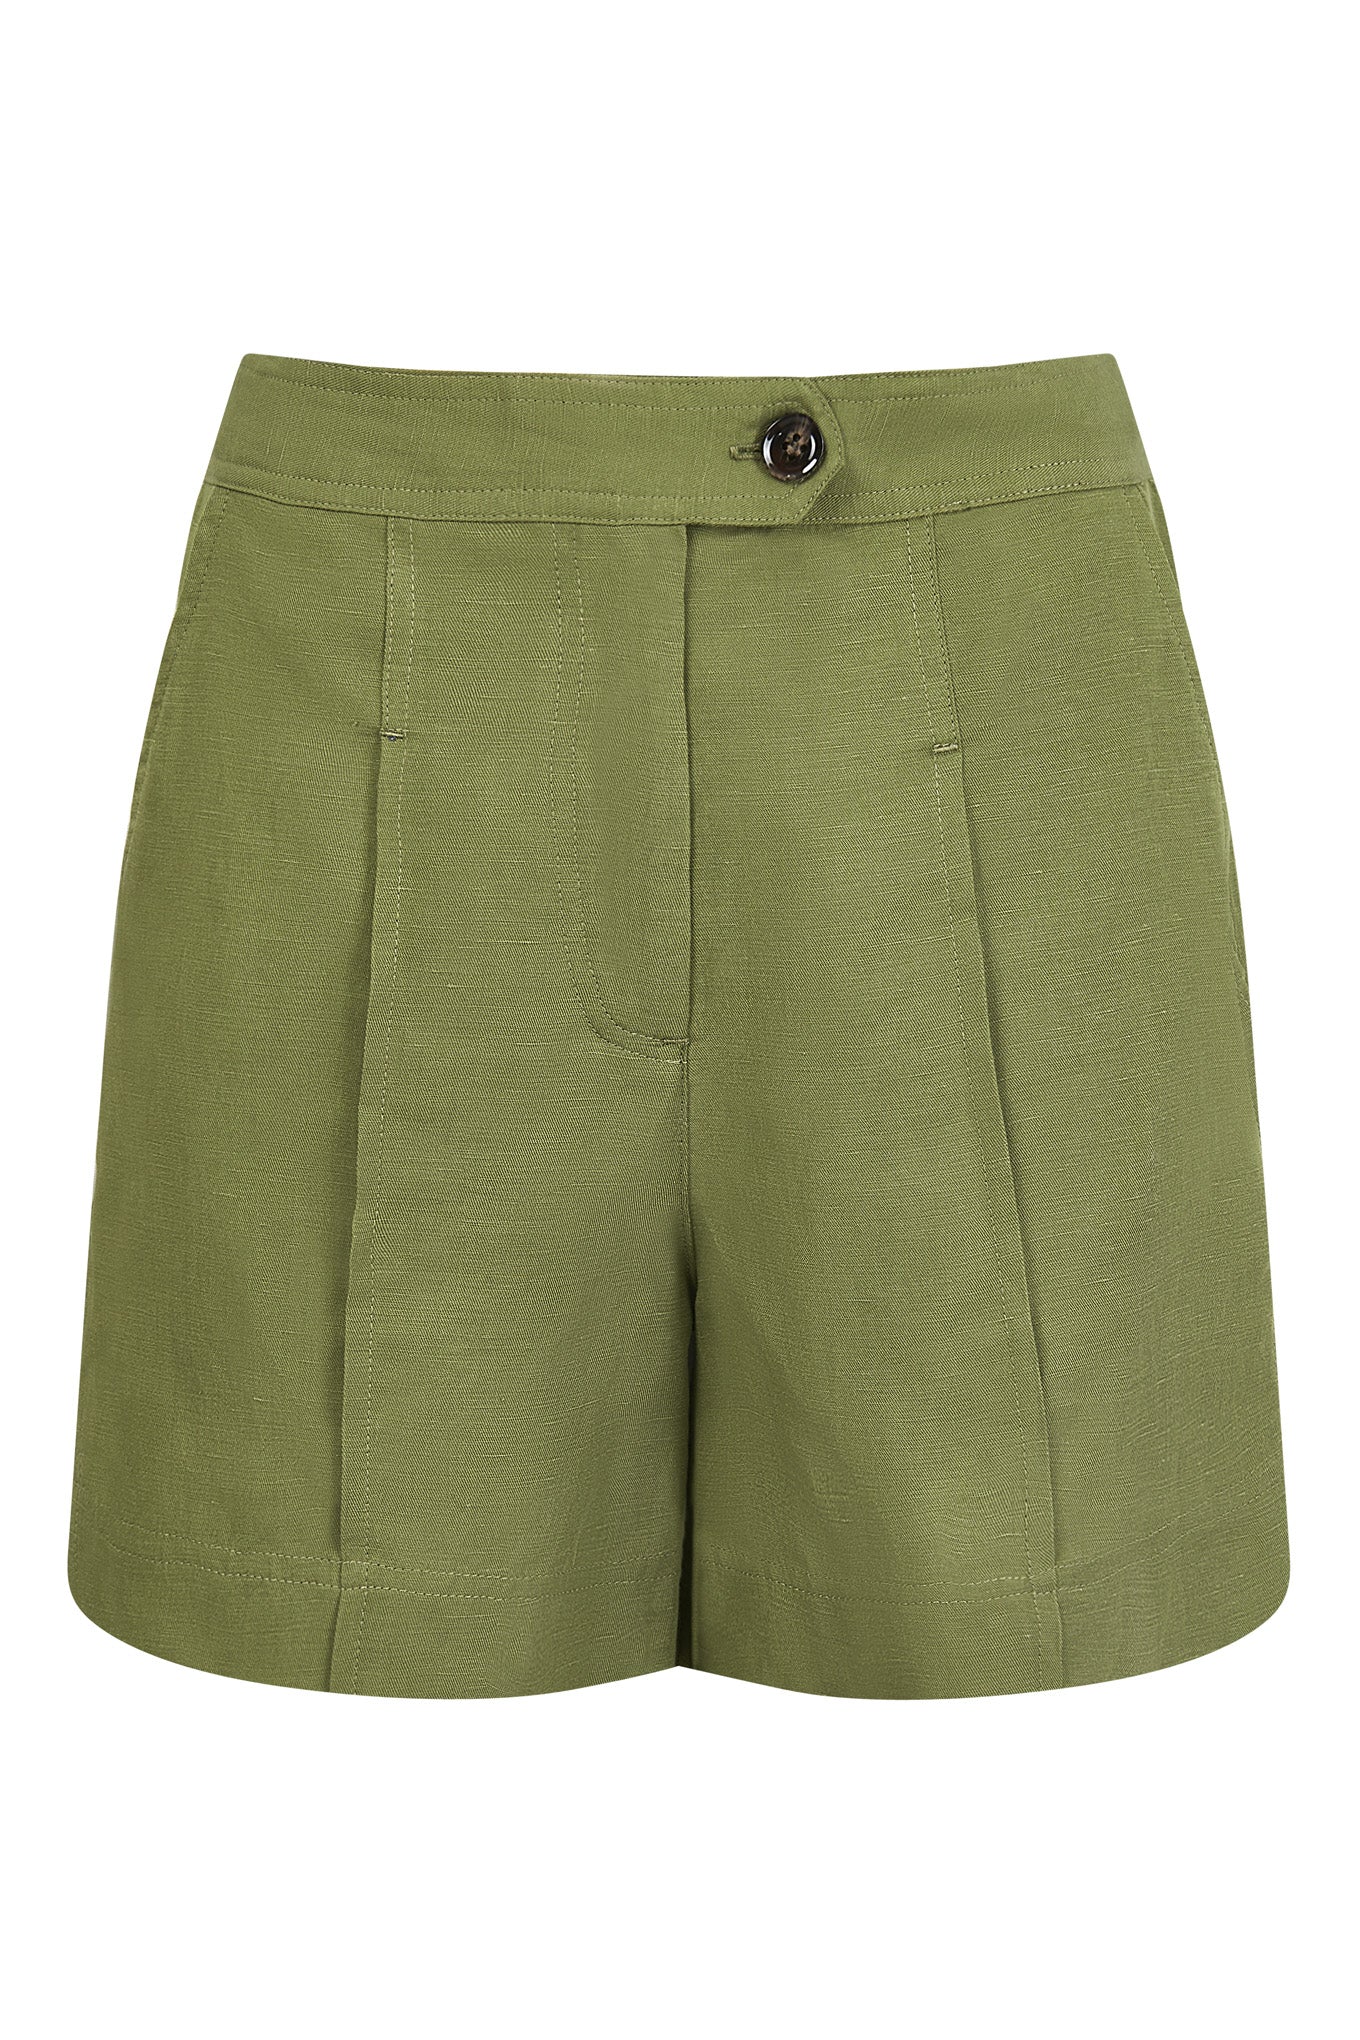 EMMIE Tencel Linen Blend Short - Khaki Green